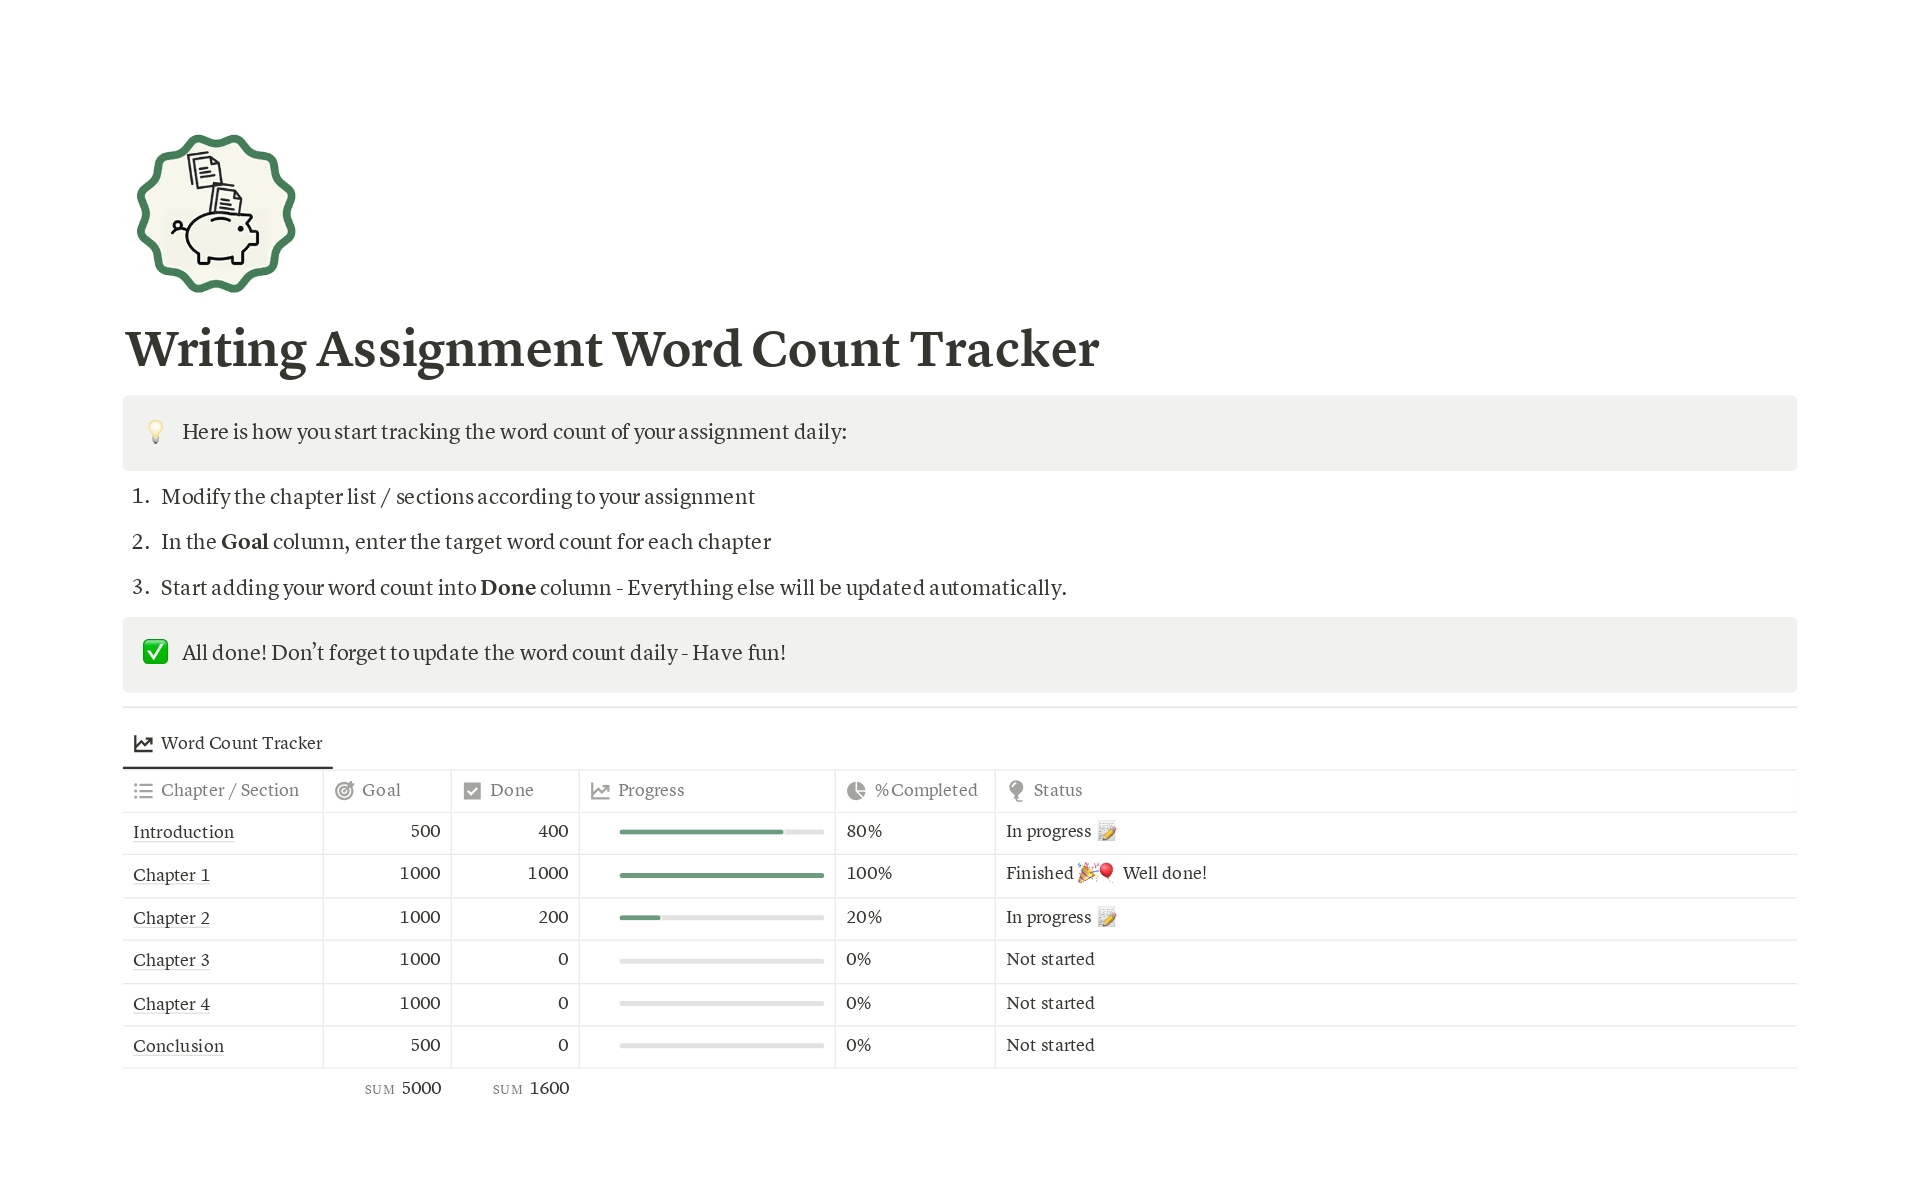 Uma prévia do modelo para Writing Assignment Word Count Tracker